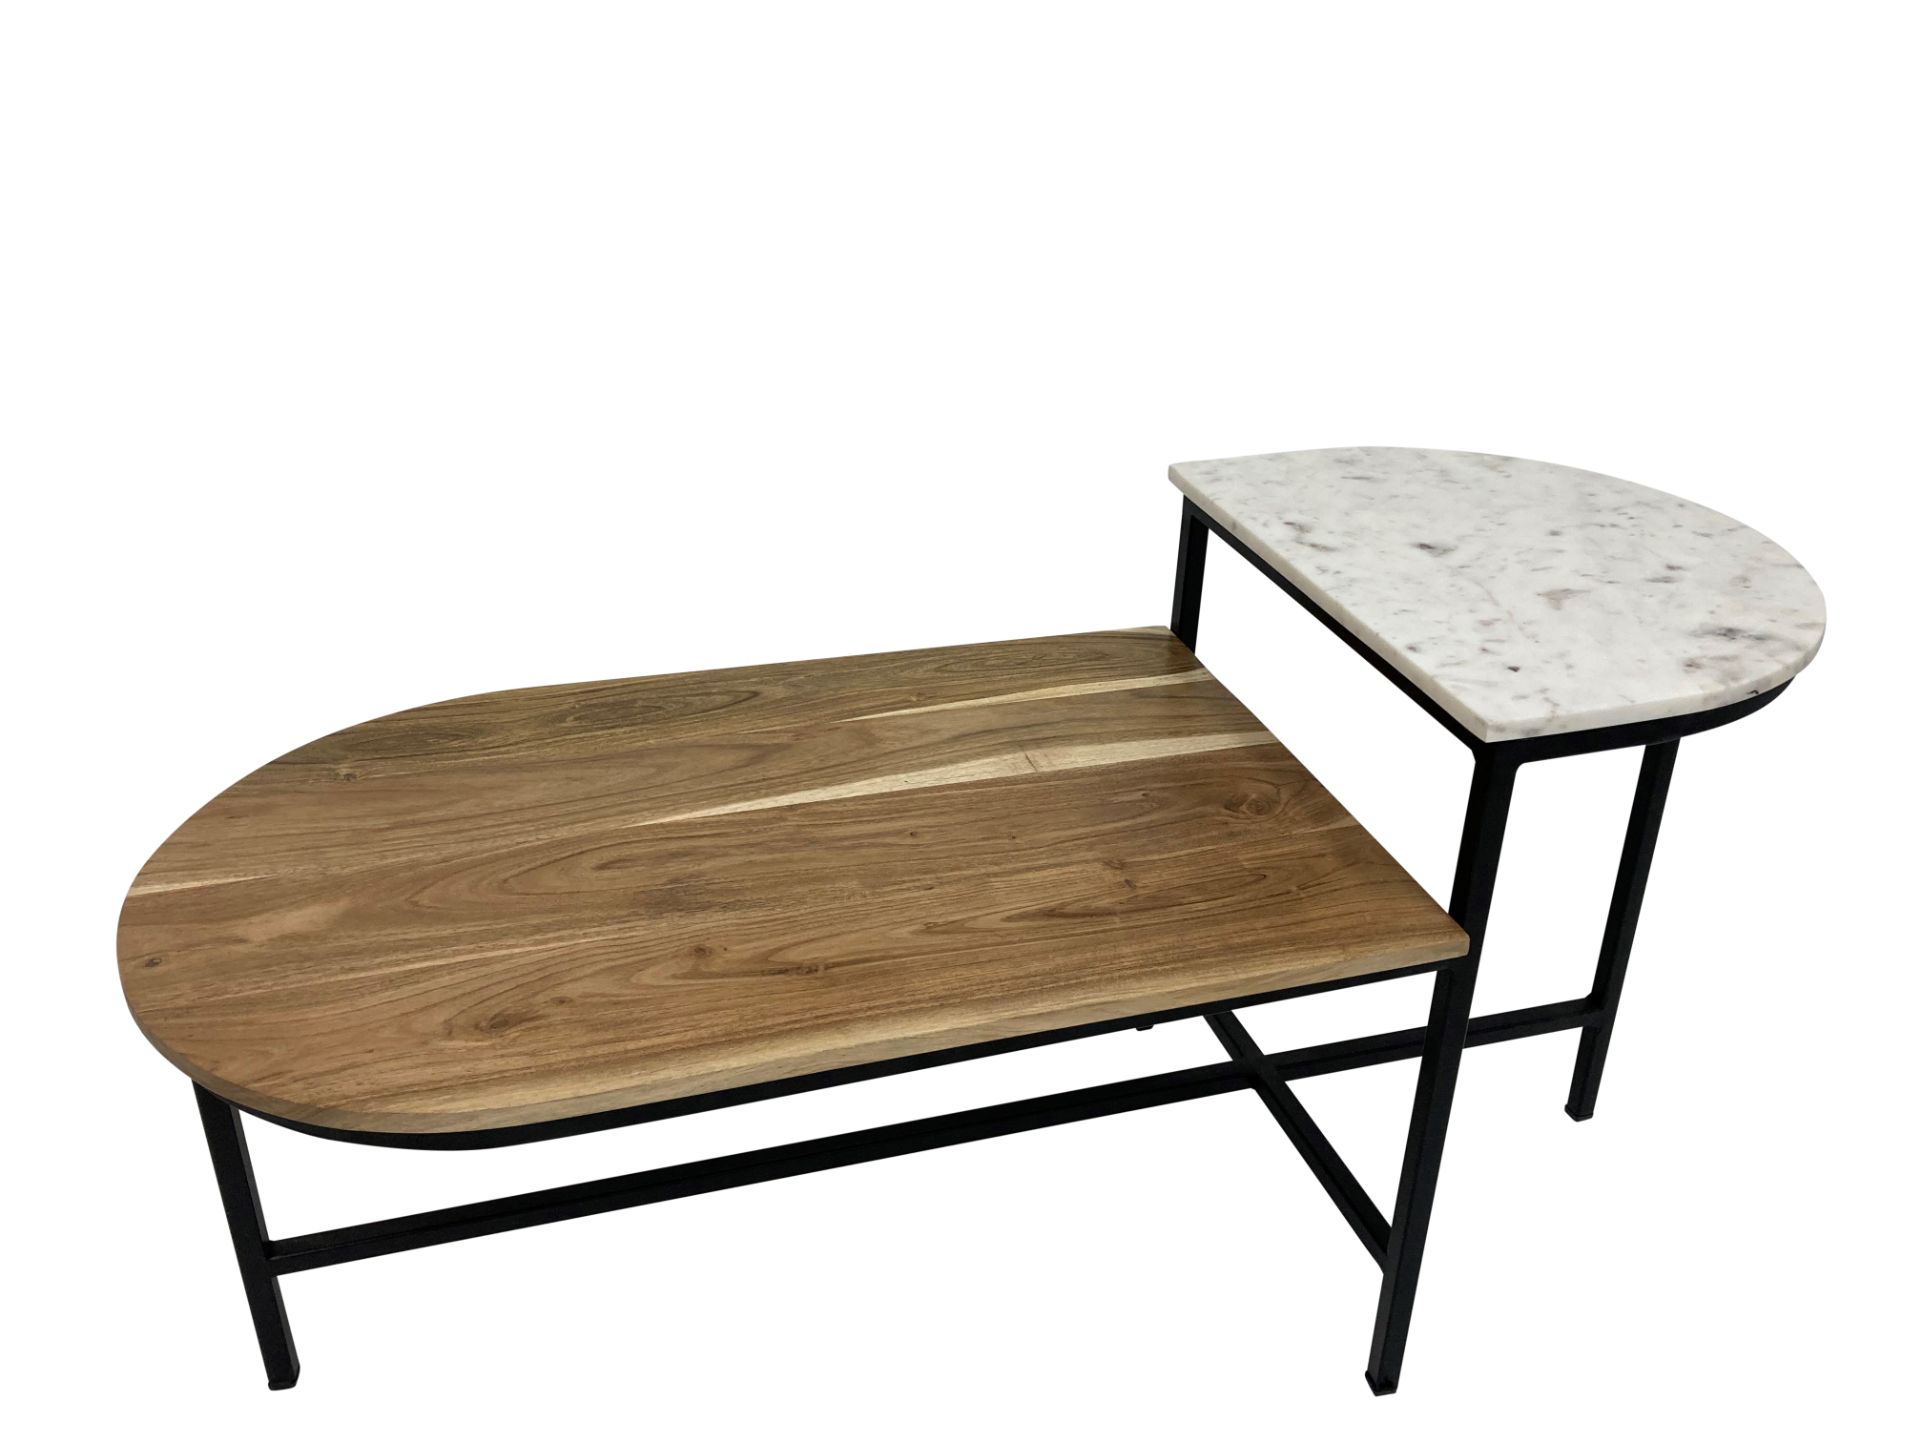 Moods collection - Ovale houten salontafel met marmeren verhoging